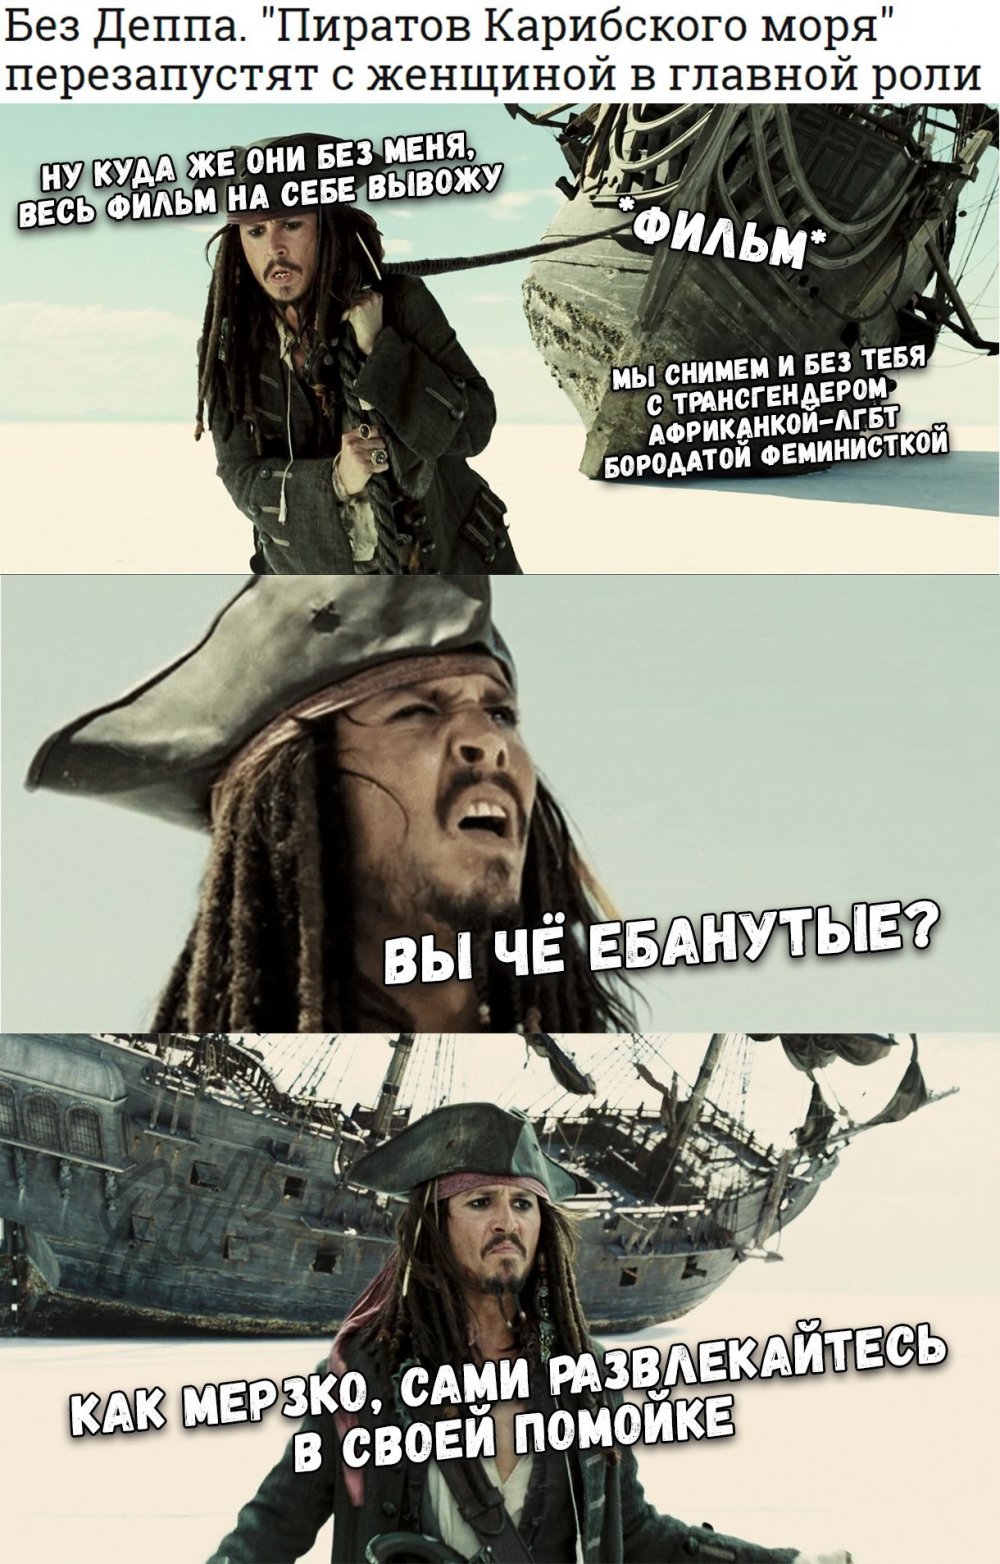 Пираты Карибского моря шутки Джека воробья